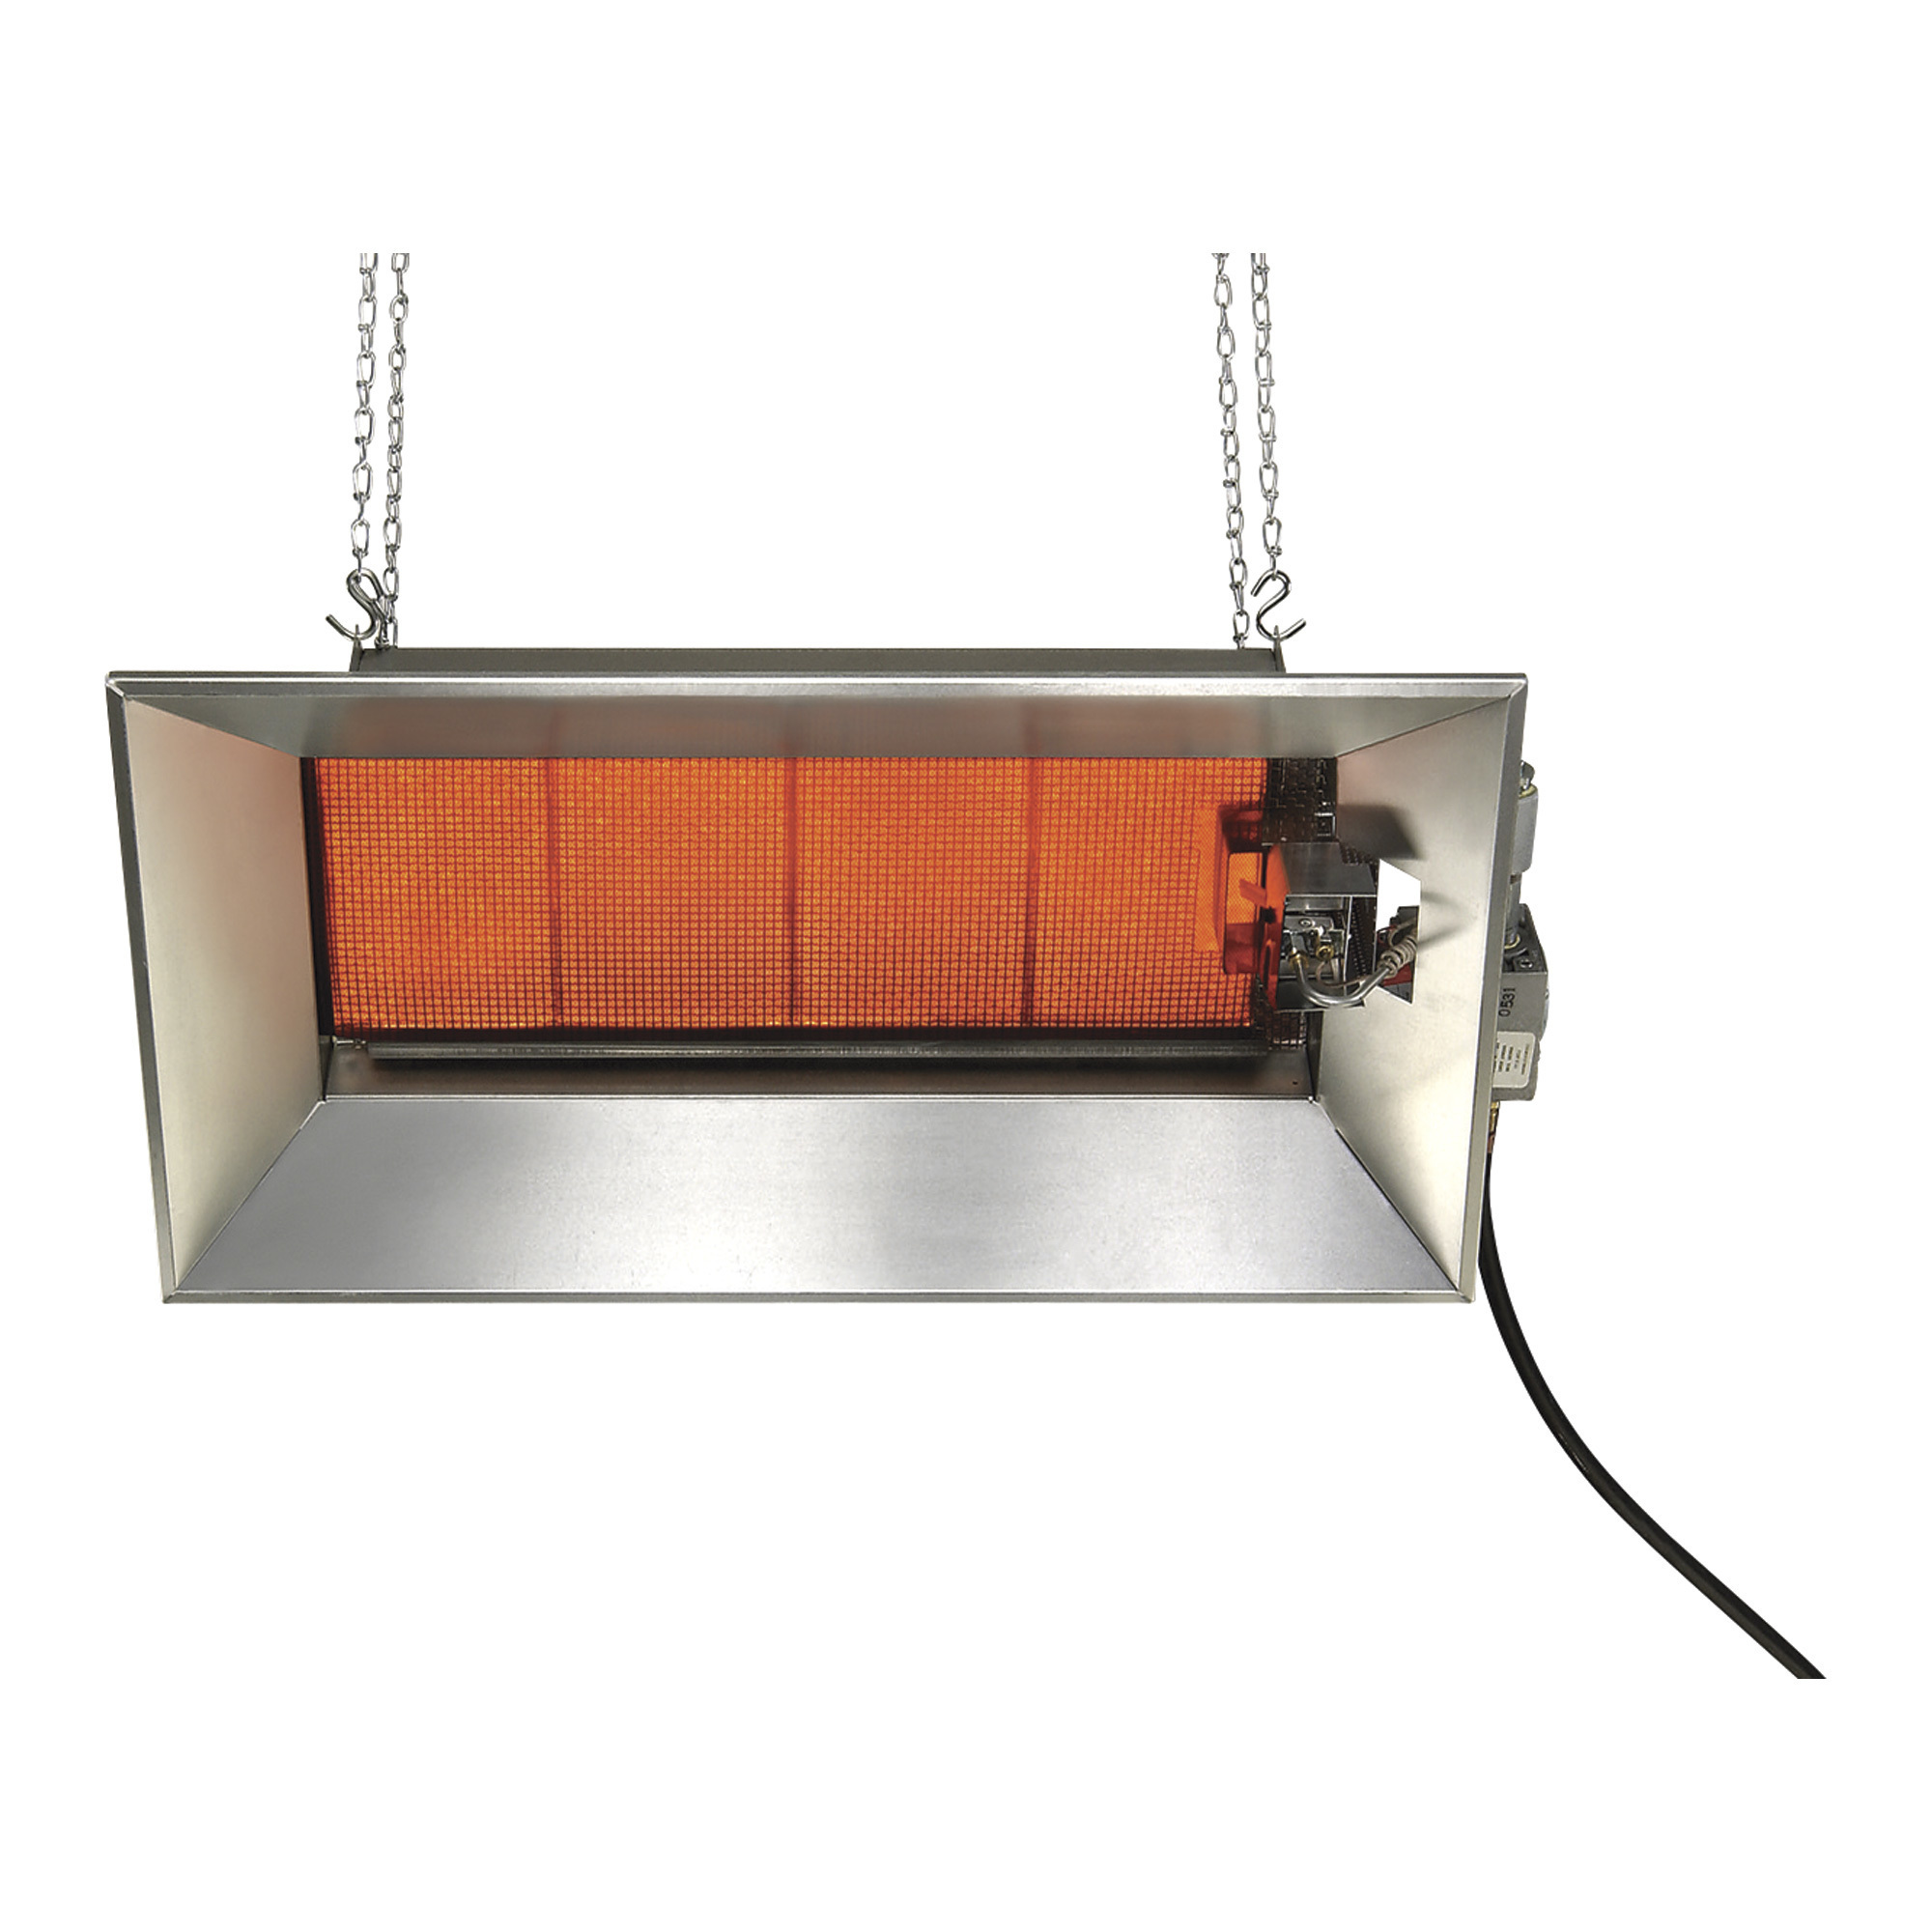 SunStar Heating Products Infrared Ceramic Heater, Propane, 52,000 BTU, Model SGM6-L1